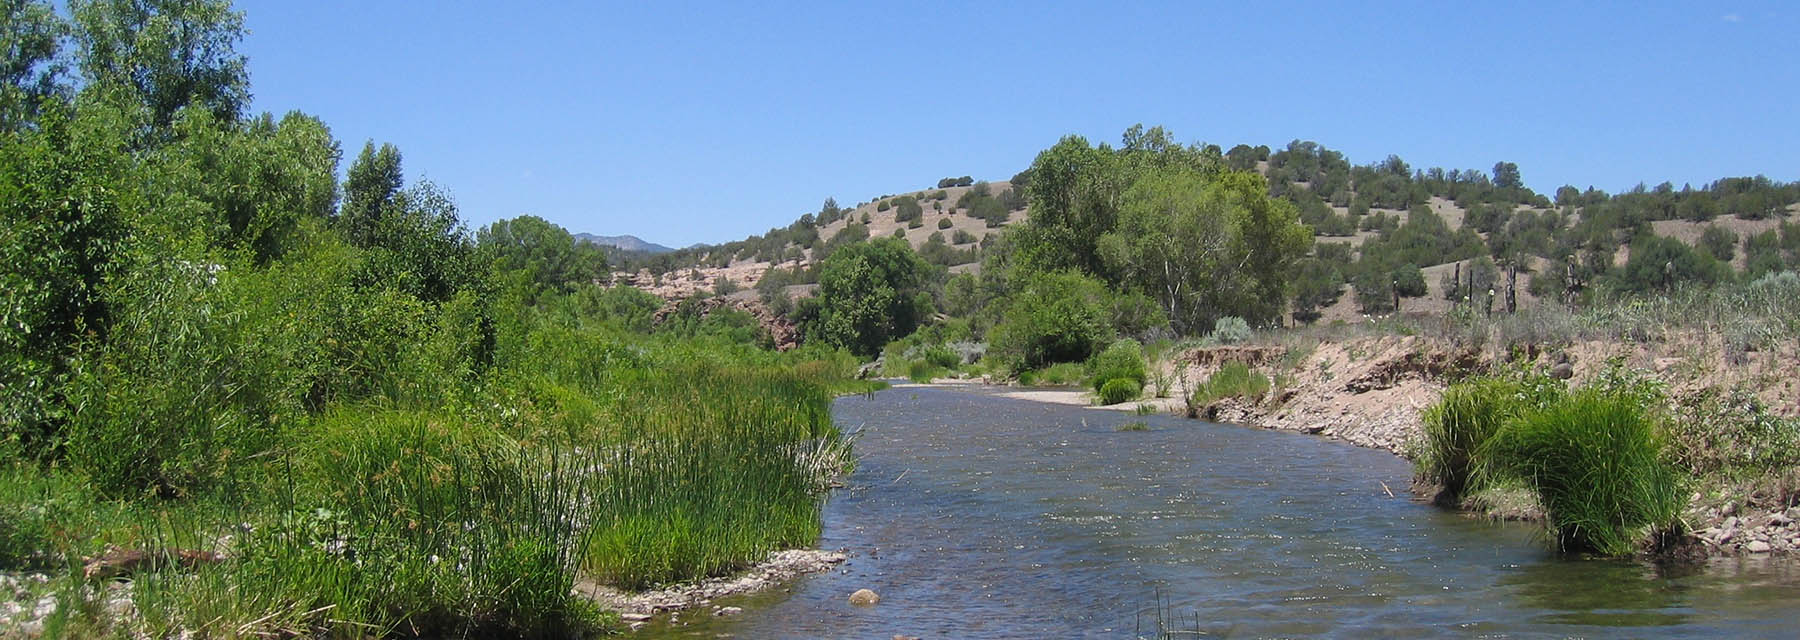 Une rivière d'eau qui coule à travers un paysage ensoleillé du Nouveau-Mexique